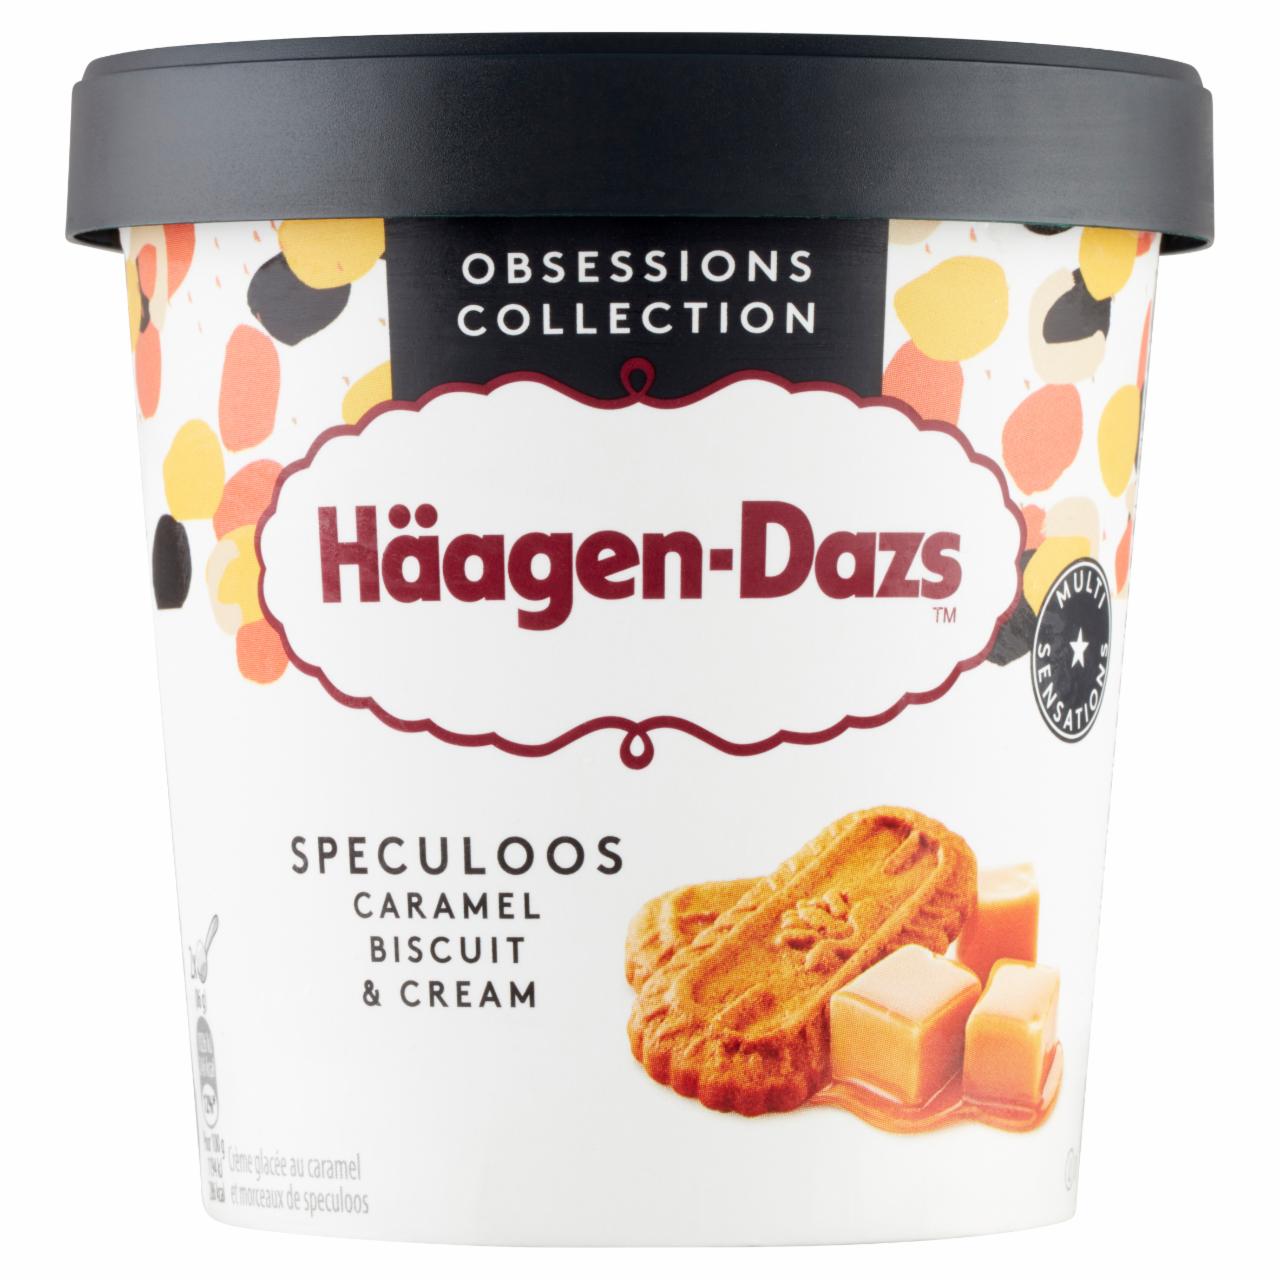 Képek - Häagen-Dazs karamellás jégkrém speculoos omlós keksz darabkákkal 460 ml